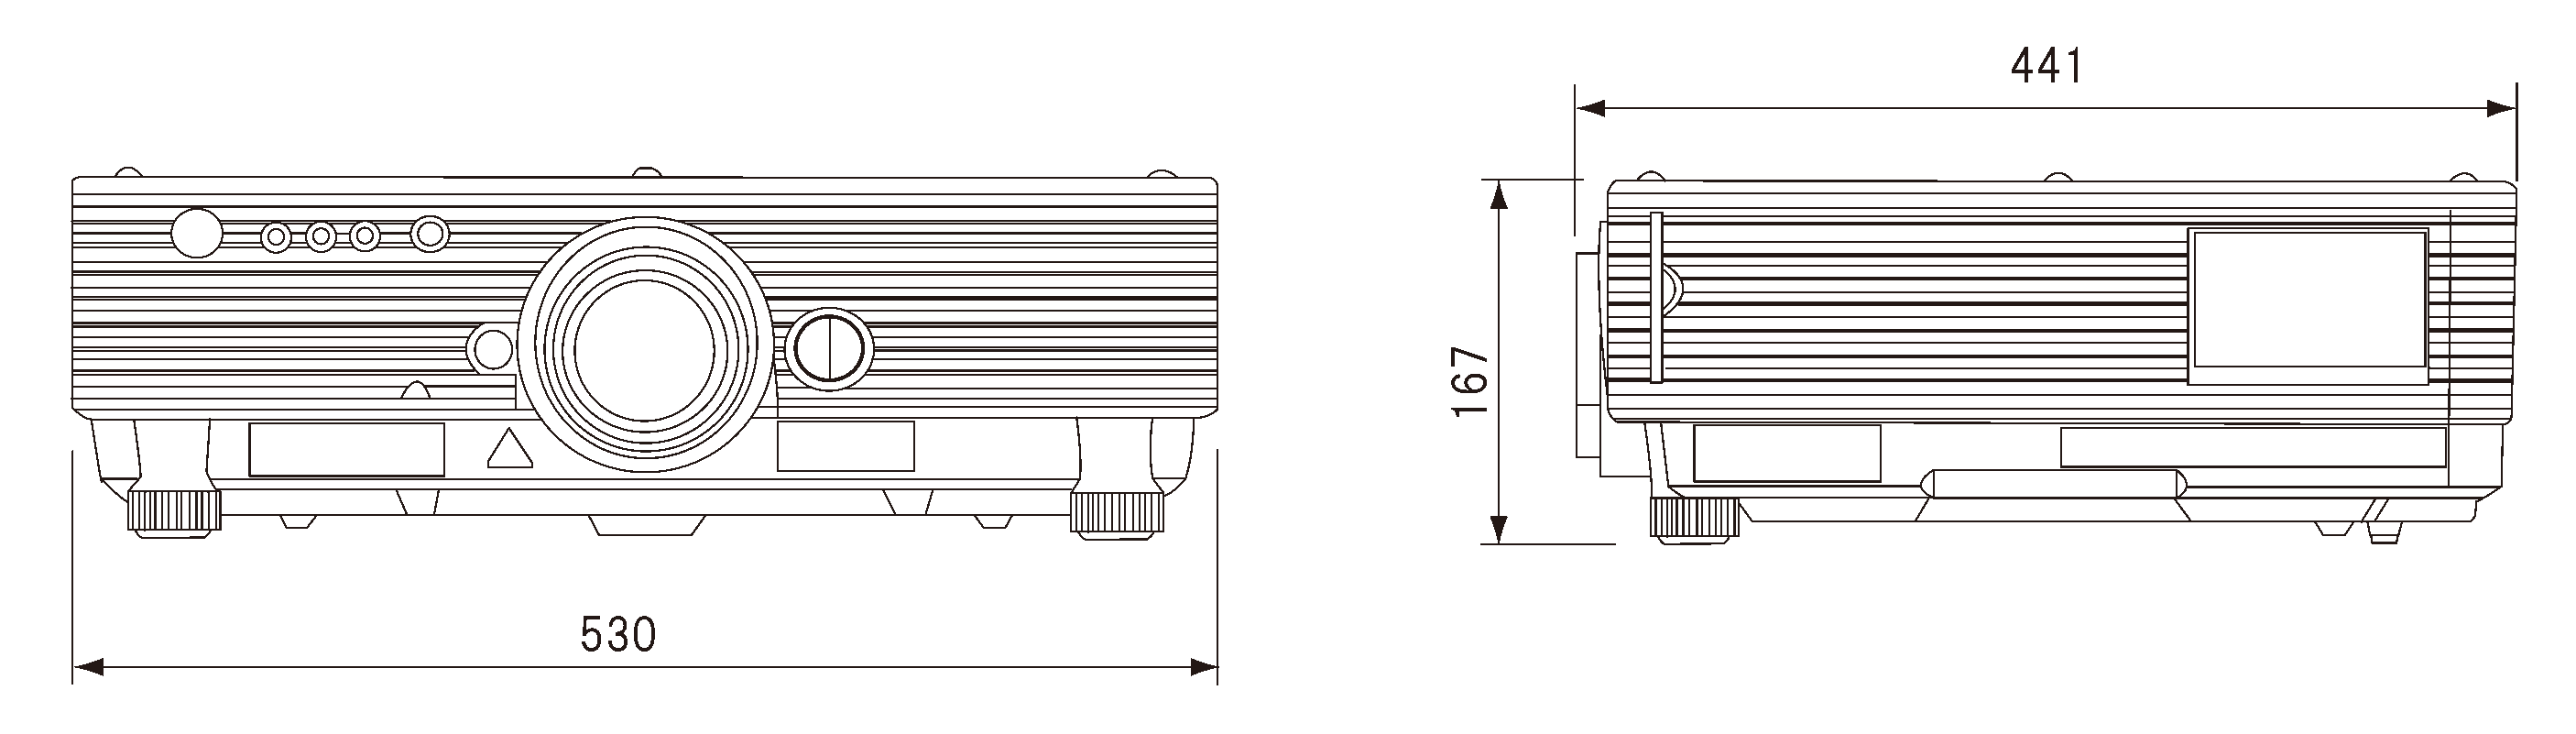 パナソニック DLPプロジェクター TH-D5500L (レンズ無しモデル) - 2